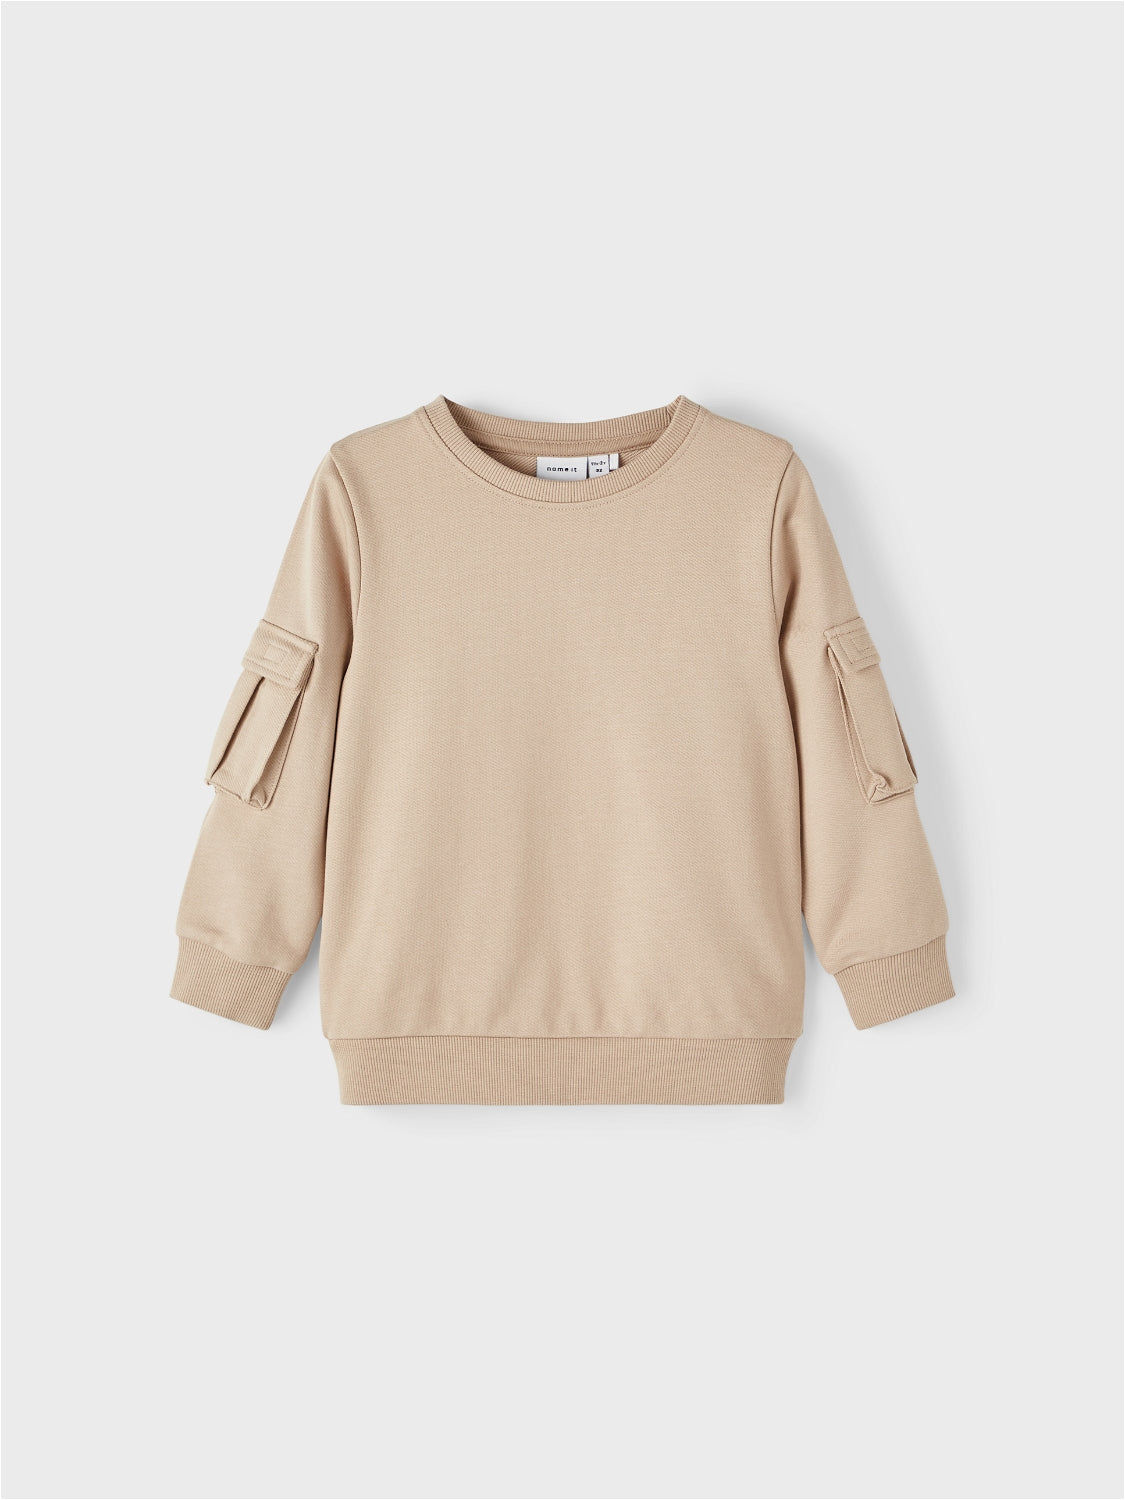 NMMOLI Sweatshirts - Oxford Tan